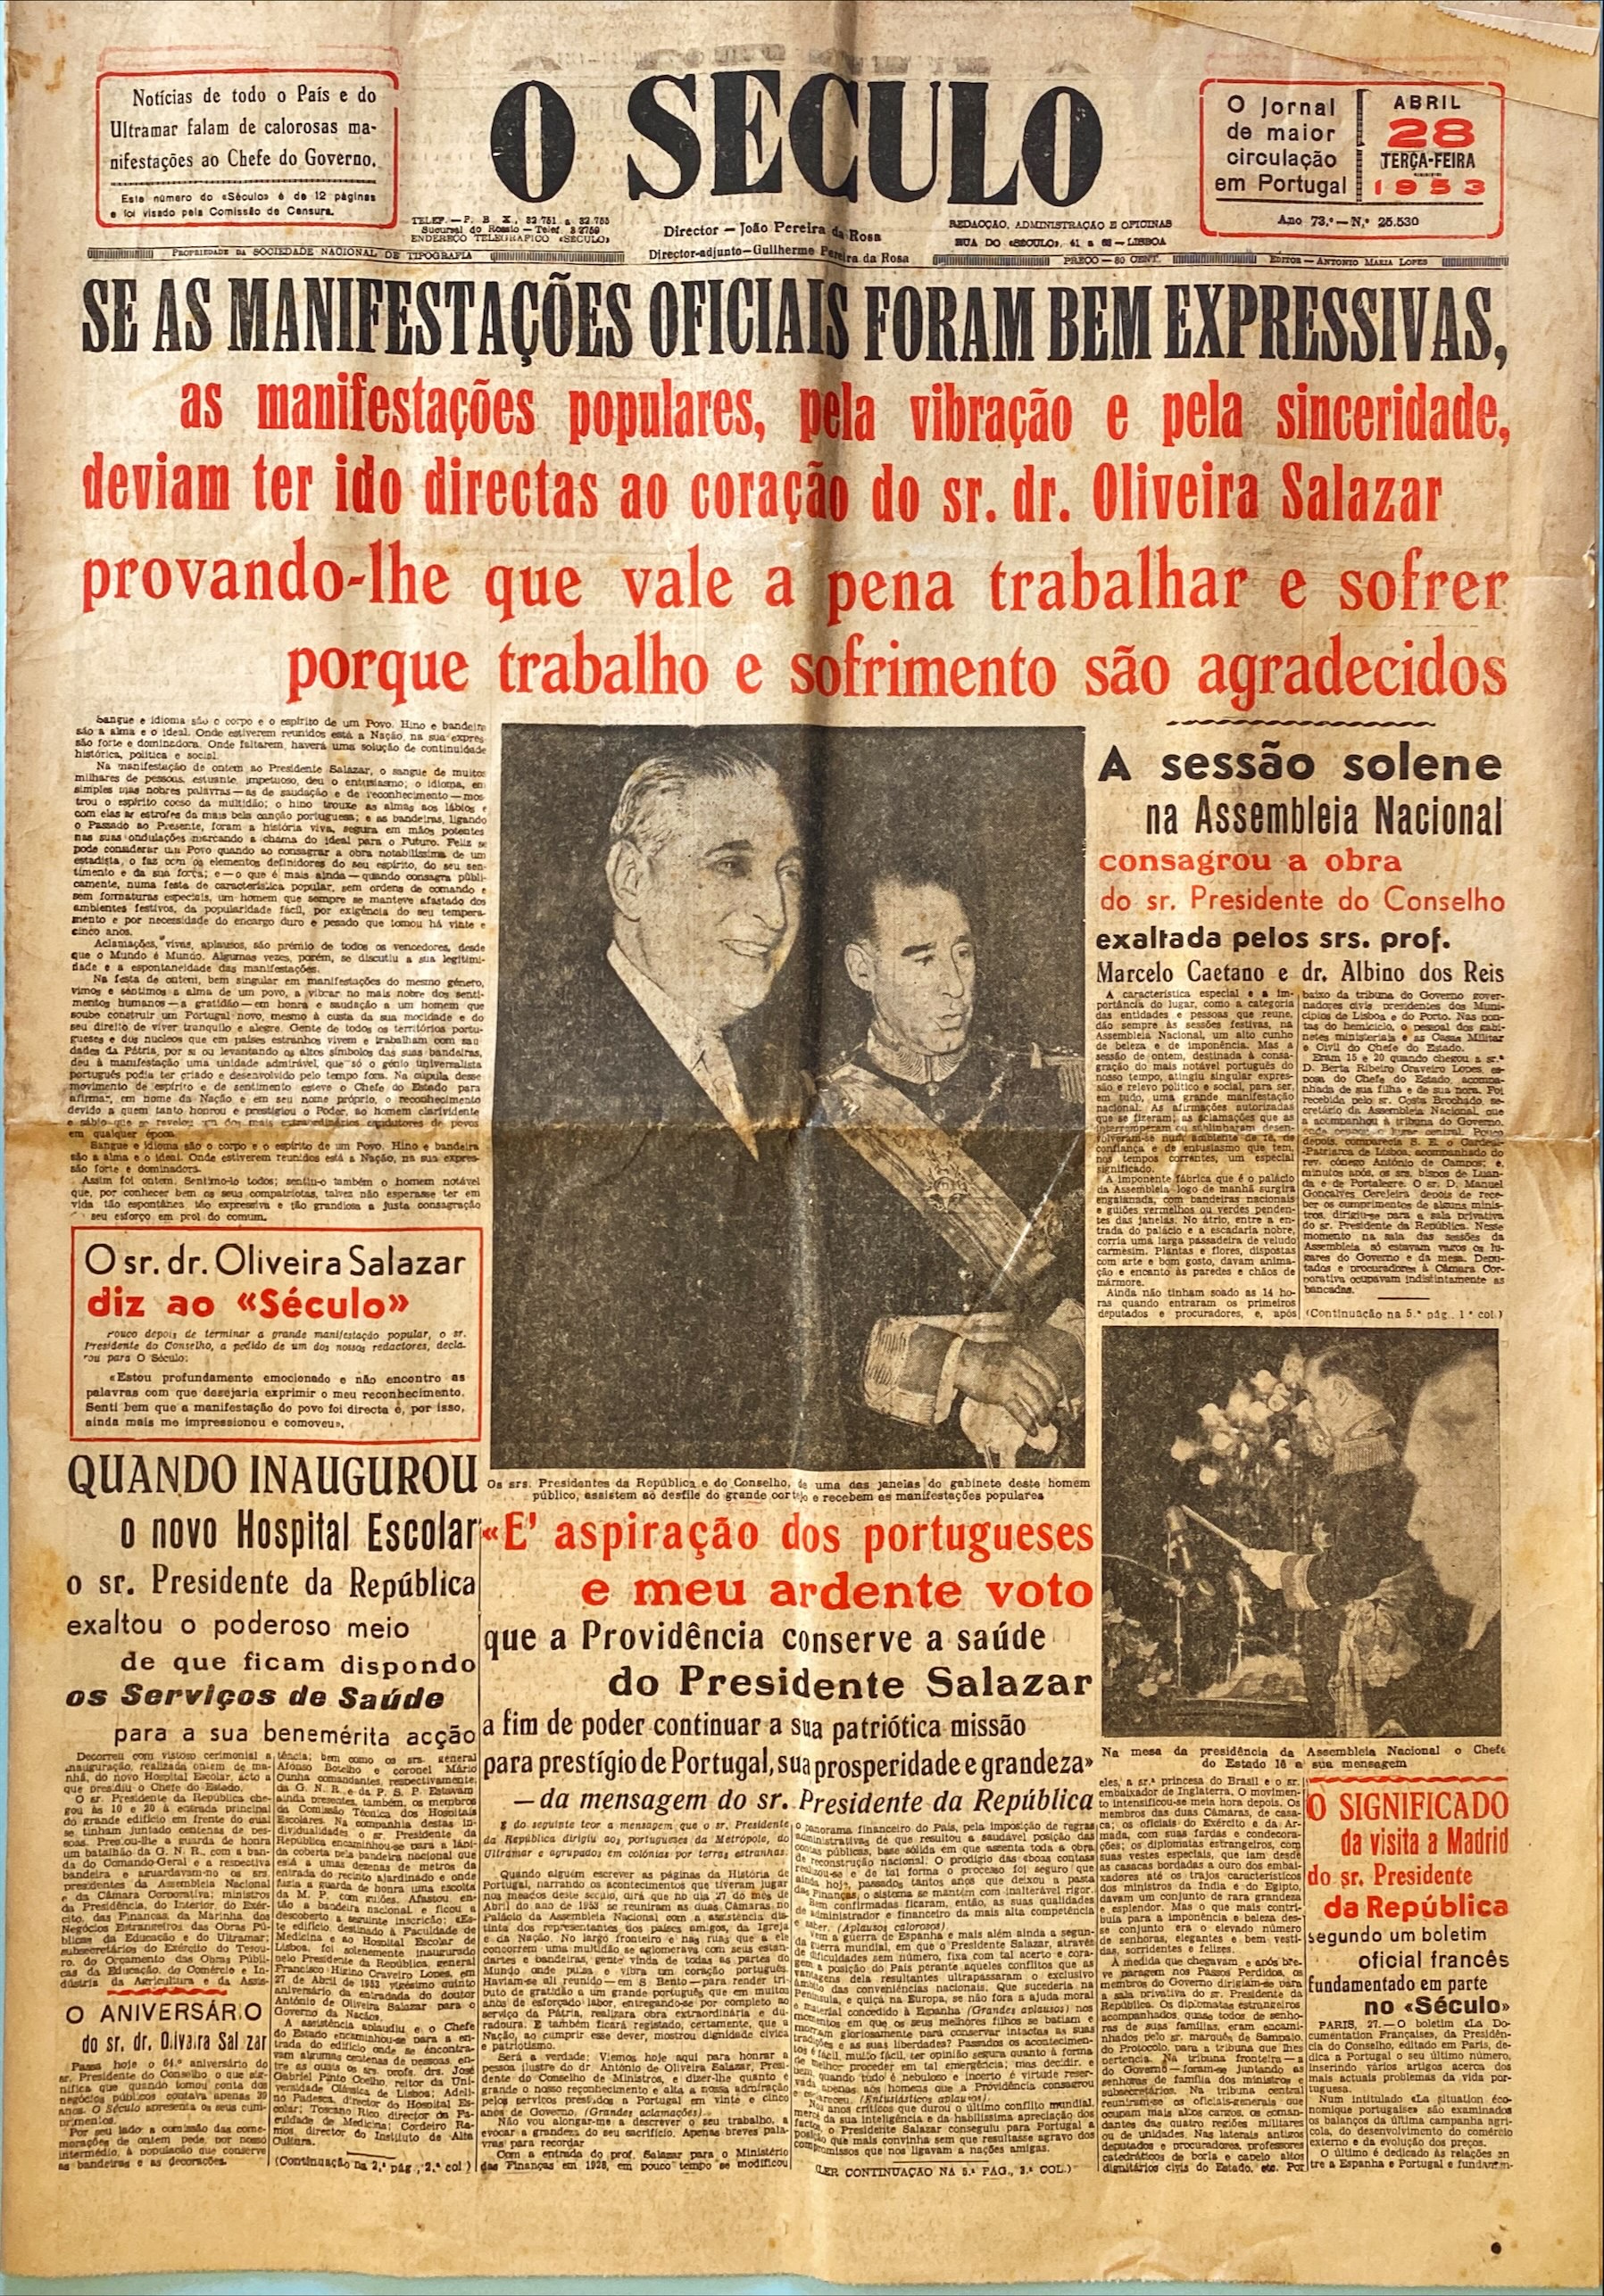 JORNAIS HISTÓRICOS – 25 ANOS DE GOVERNO DE SALAZAR (1953) – EPHEMERA